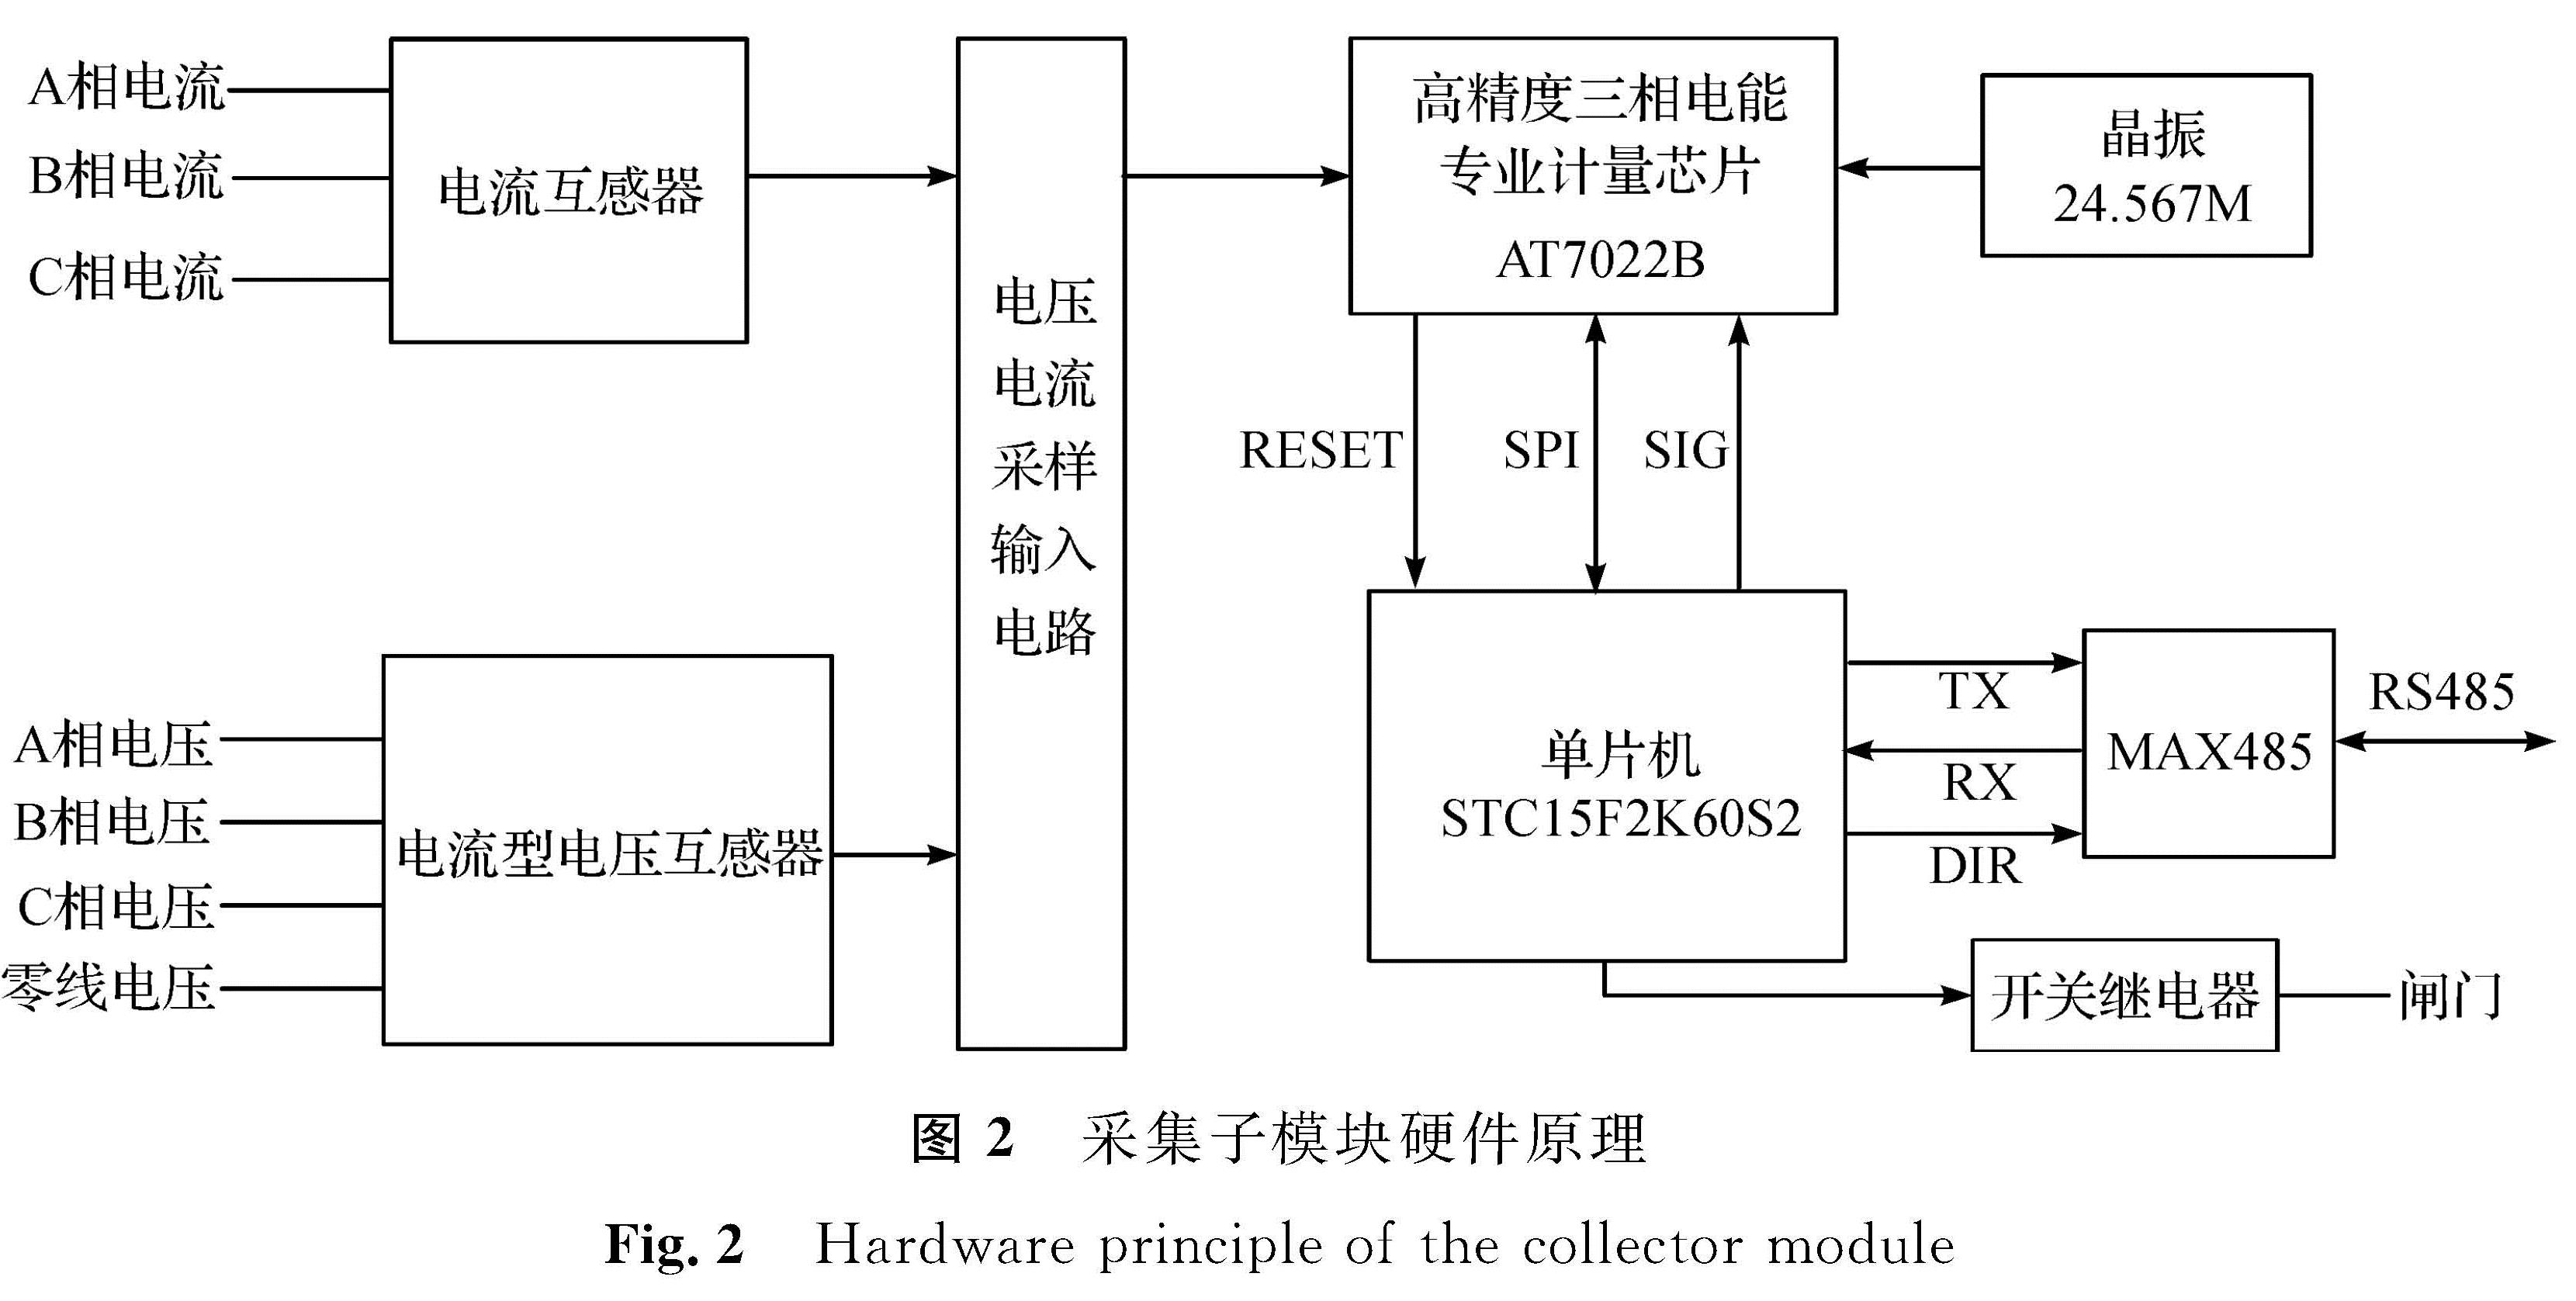 图2 采集子模块硬件原理<br/>Fig.2 Hardware principle of the collector module